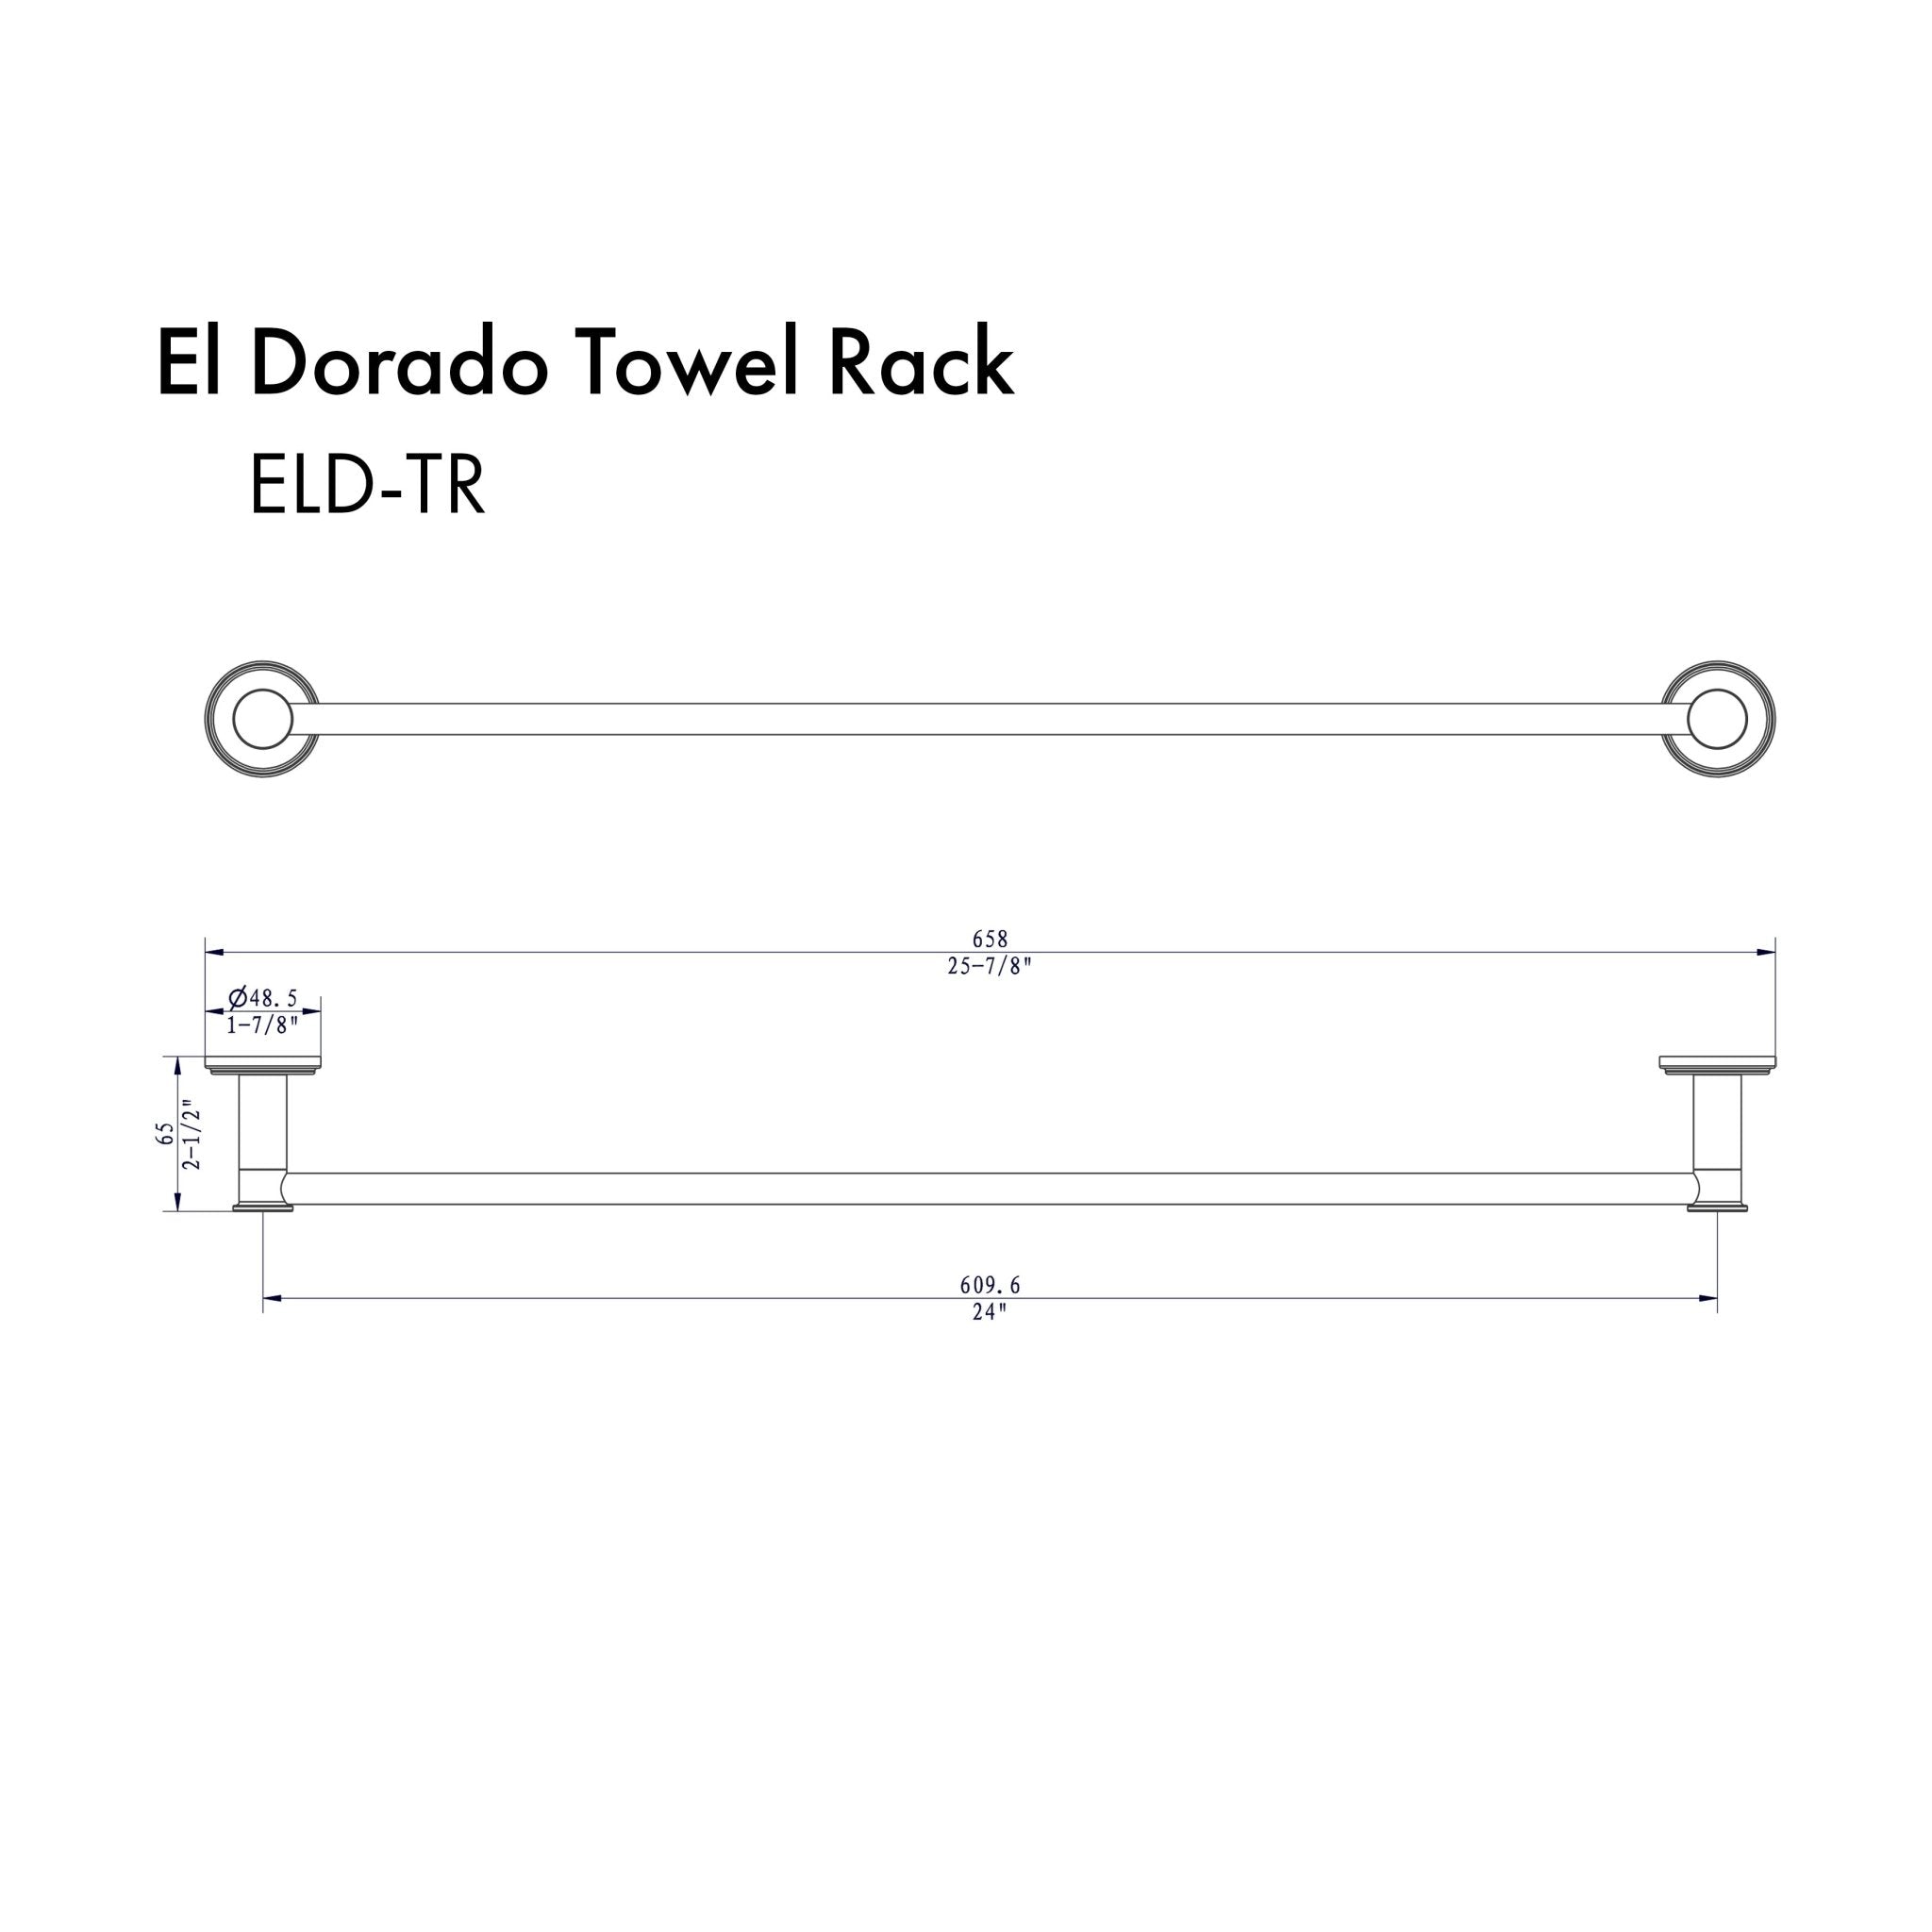 ZLINE El Dorado Towel Rail with color options (ELD-TR) dimensional diagram